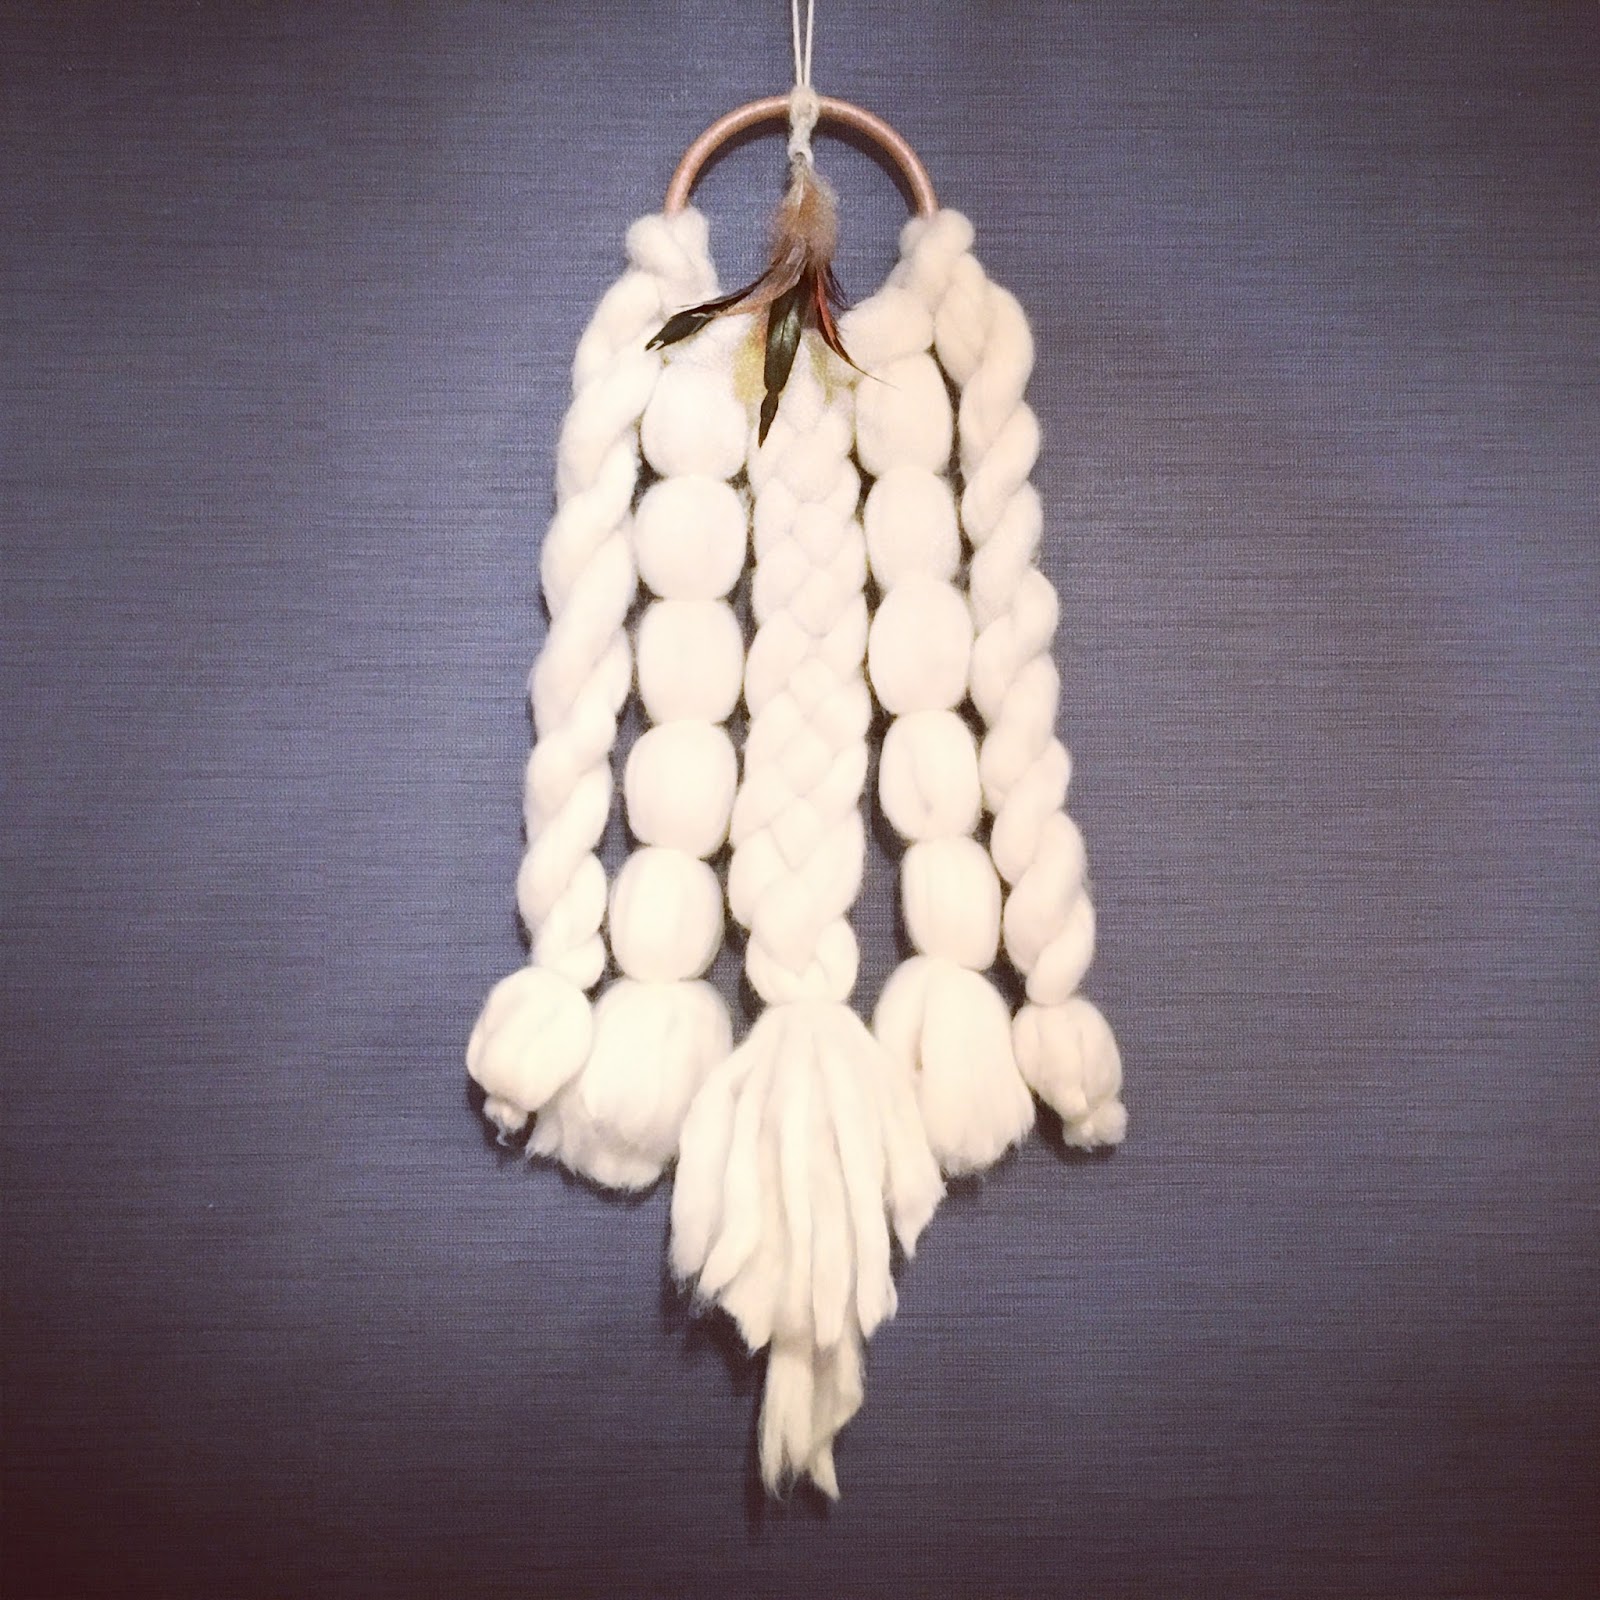 超極太毛糸bicky で作ったドリームキャッチャー風壁飾り 毛糸ズキ